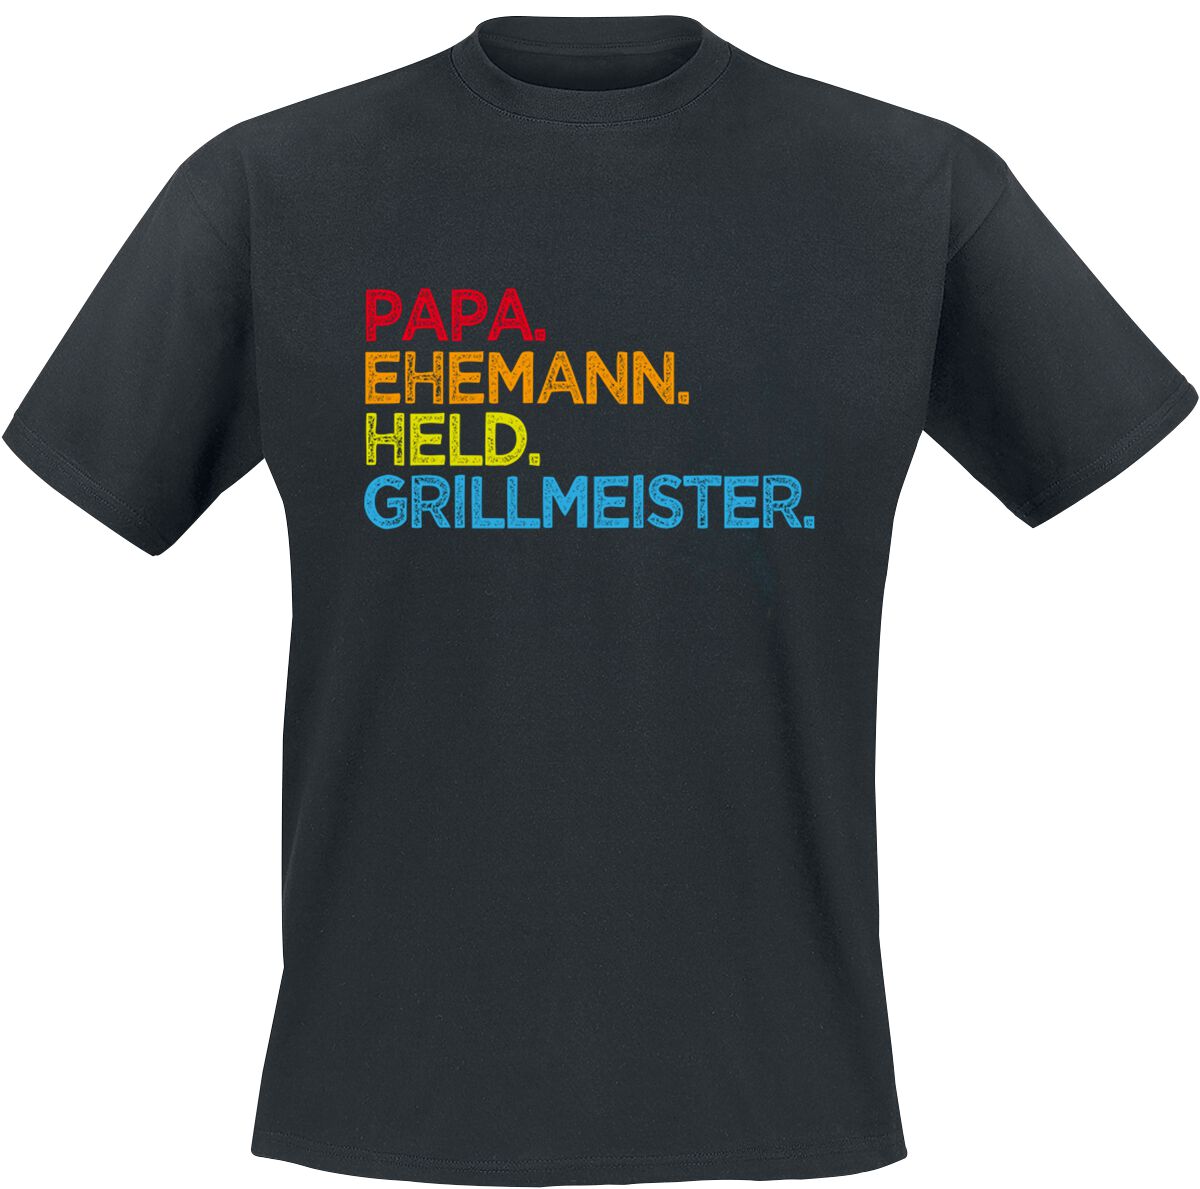 Familie & Freunde T-Shirt - Papa. Ehemann. Held. Grillmeister - S bis 5XL - für Männer - Größe 5XL - schwarz